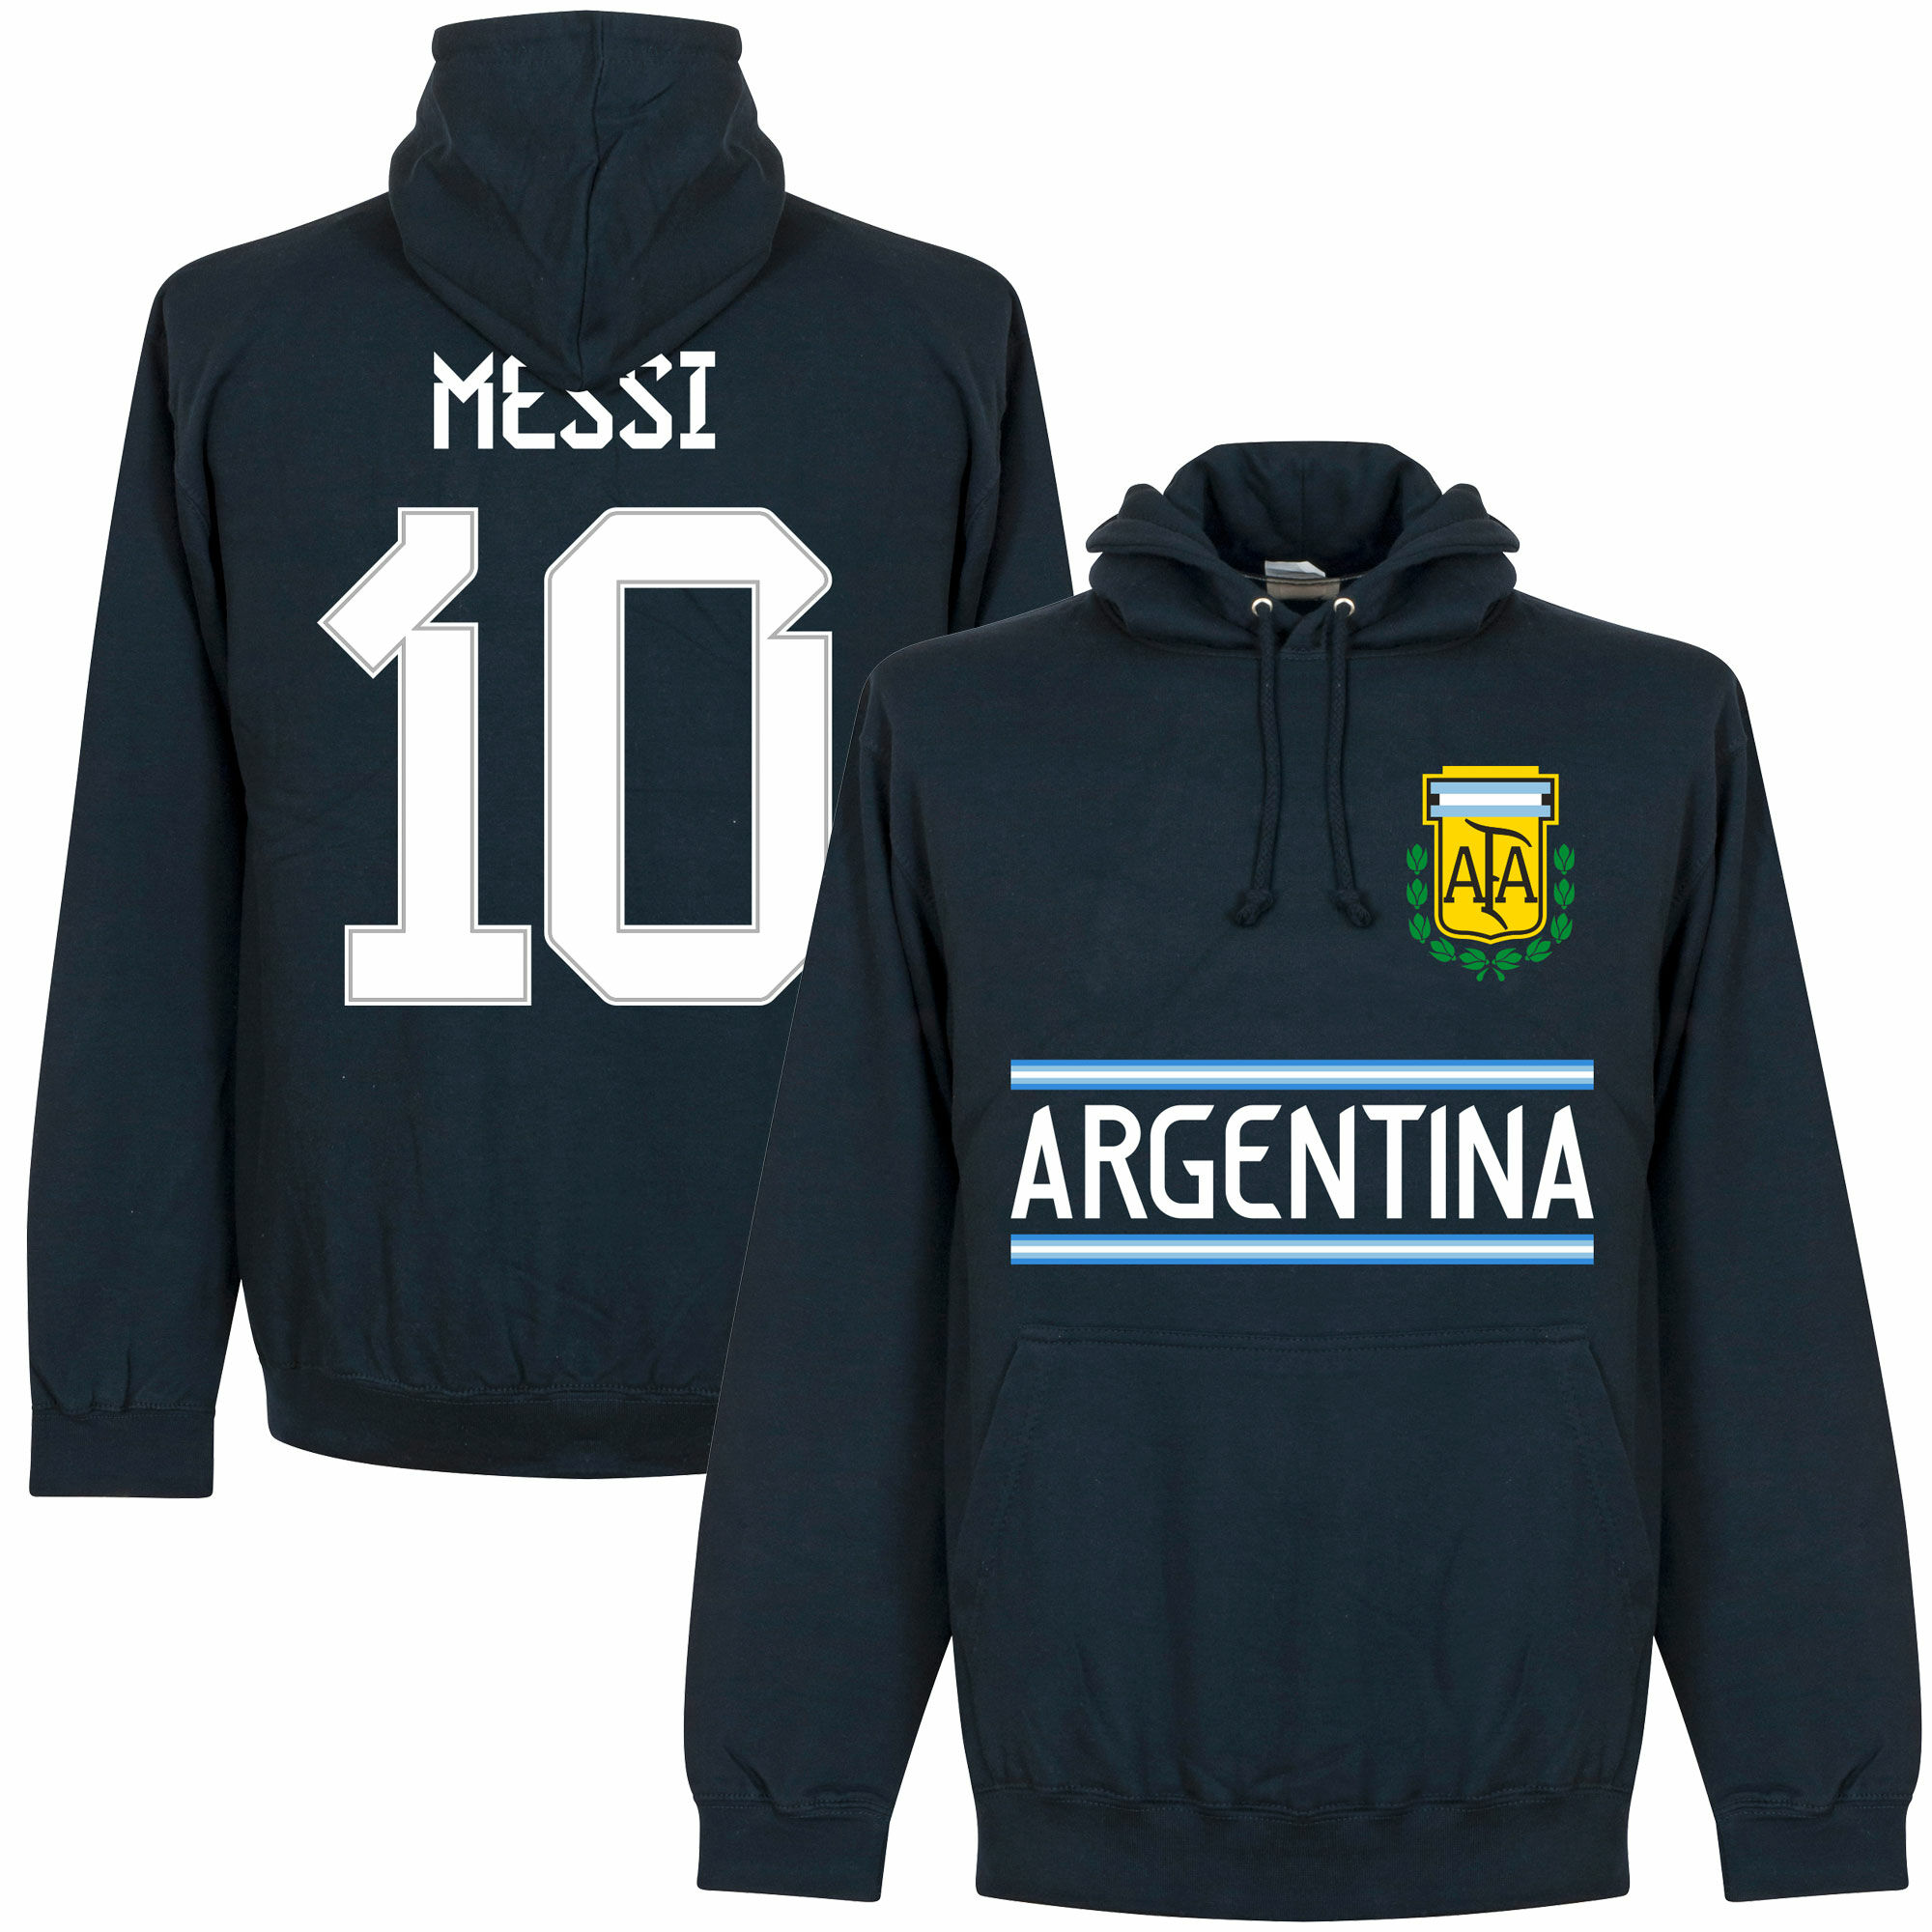 Argentina - Mikina s kapucí dětská - modrá, číslo 10, Lionel Messi